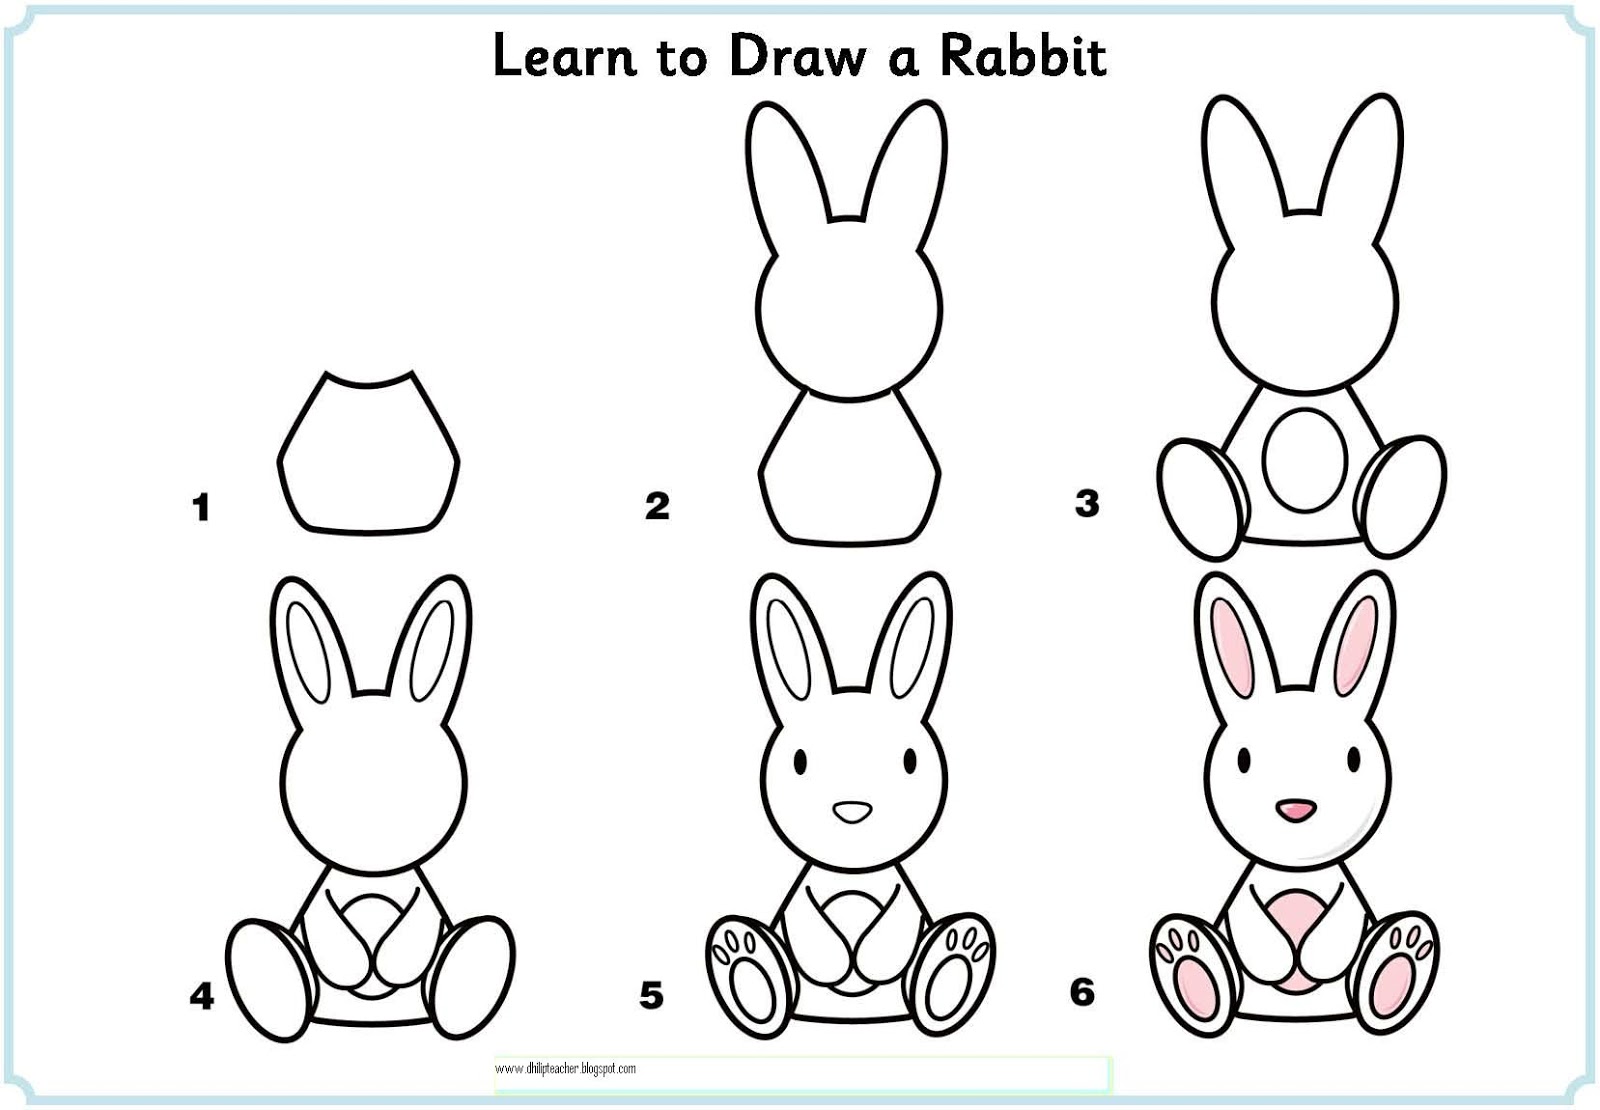 Зайчик 1 часть. Нарисовать зайца пошагово для детей. Поэтапное рисованиезаца. Зайчик для рисования для детей. Поэтапное рисование зайца для детей.